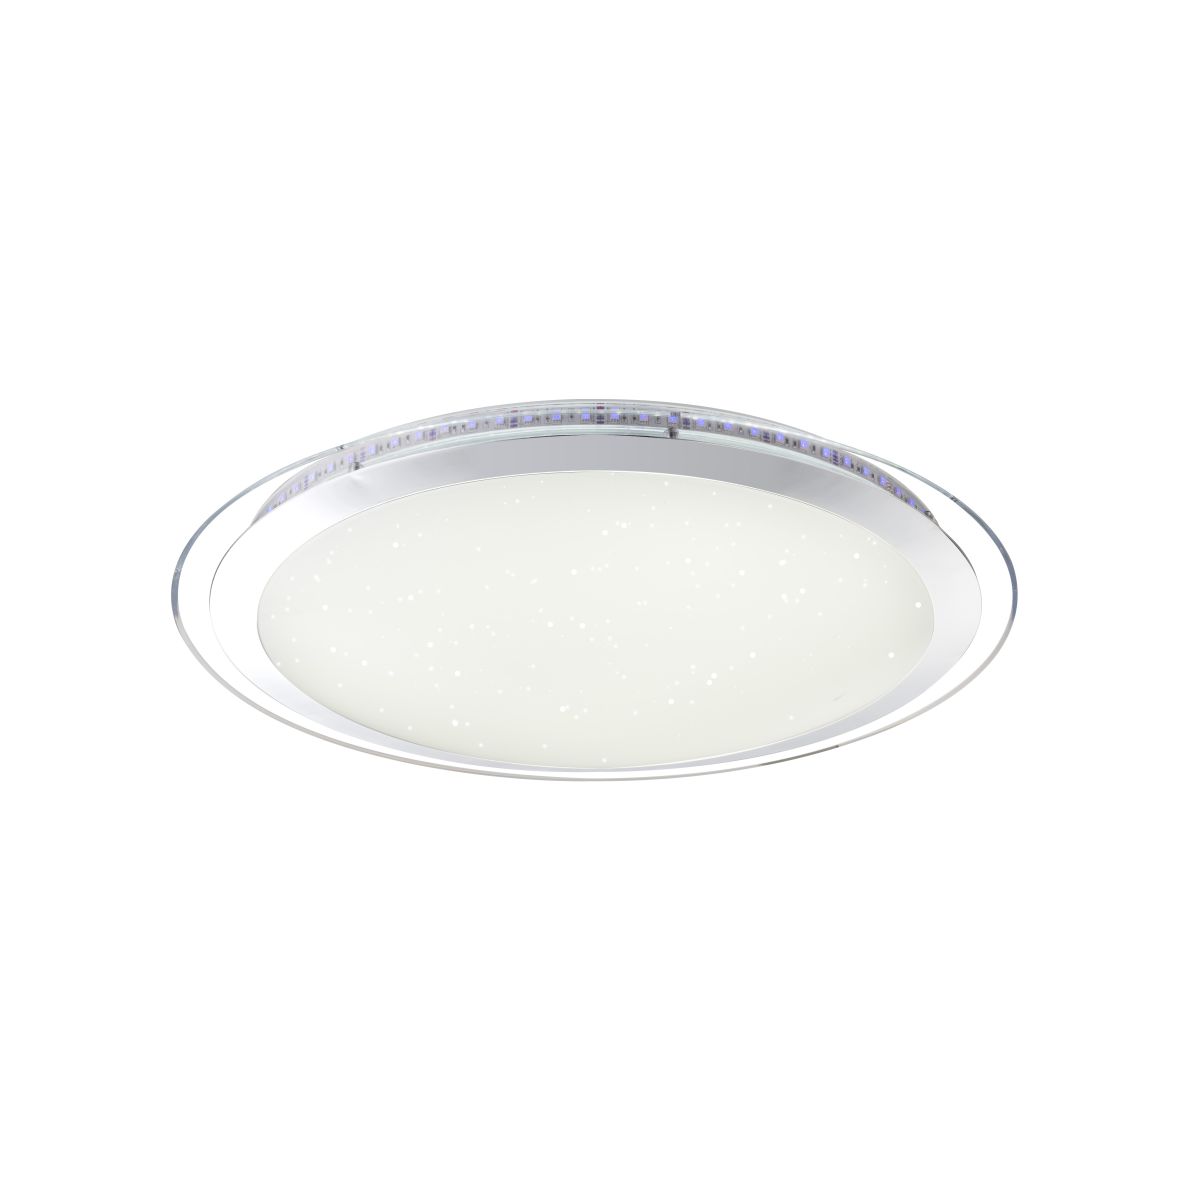 Светильник потолочный GLOBO 48365-60, хром, белый, LED, LED RGB, 1x60W 48365-60